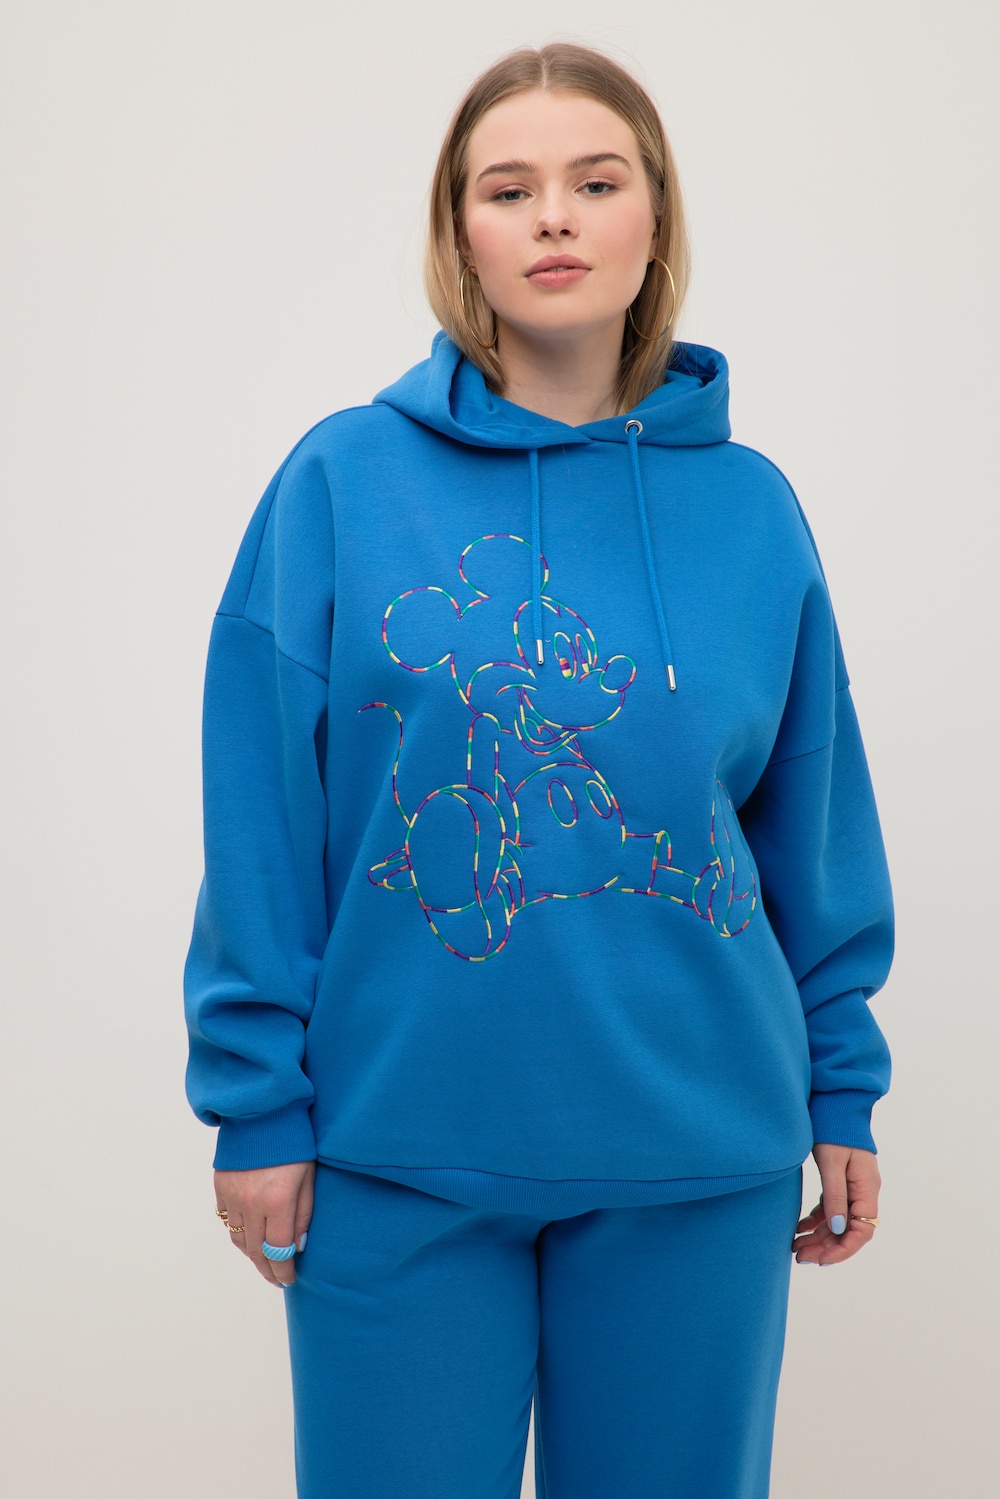 Grote Maten hoodie, Dames, blauw, Maat: 58/60, Katoen/Polyester, Studio Untold